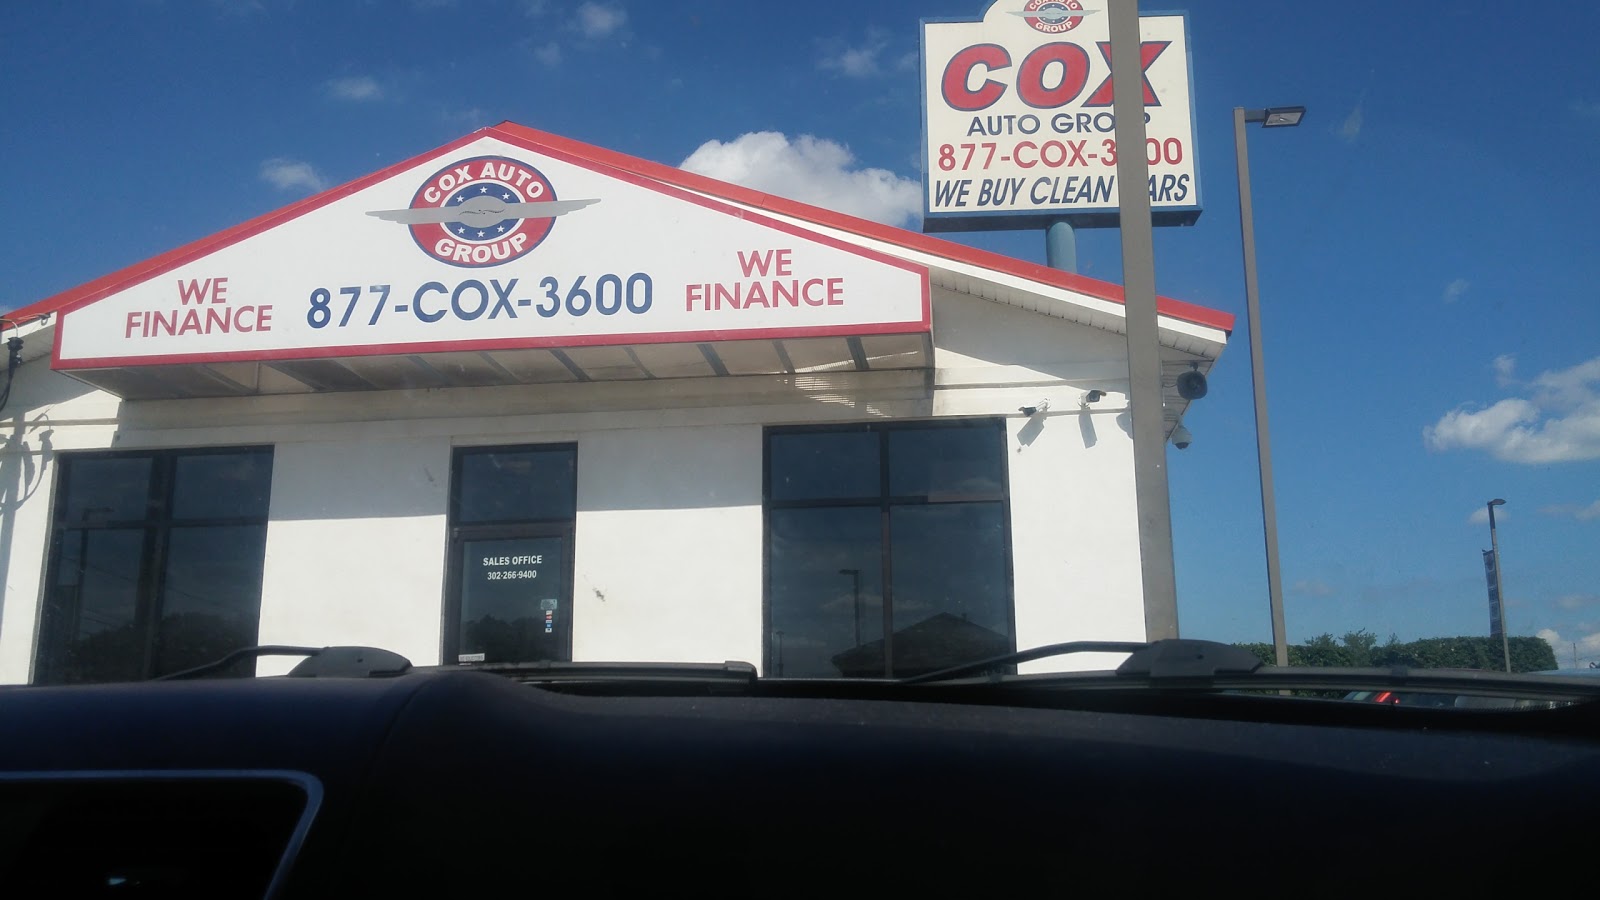 Cox Auto Group